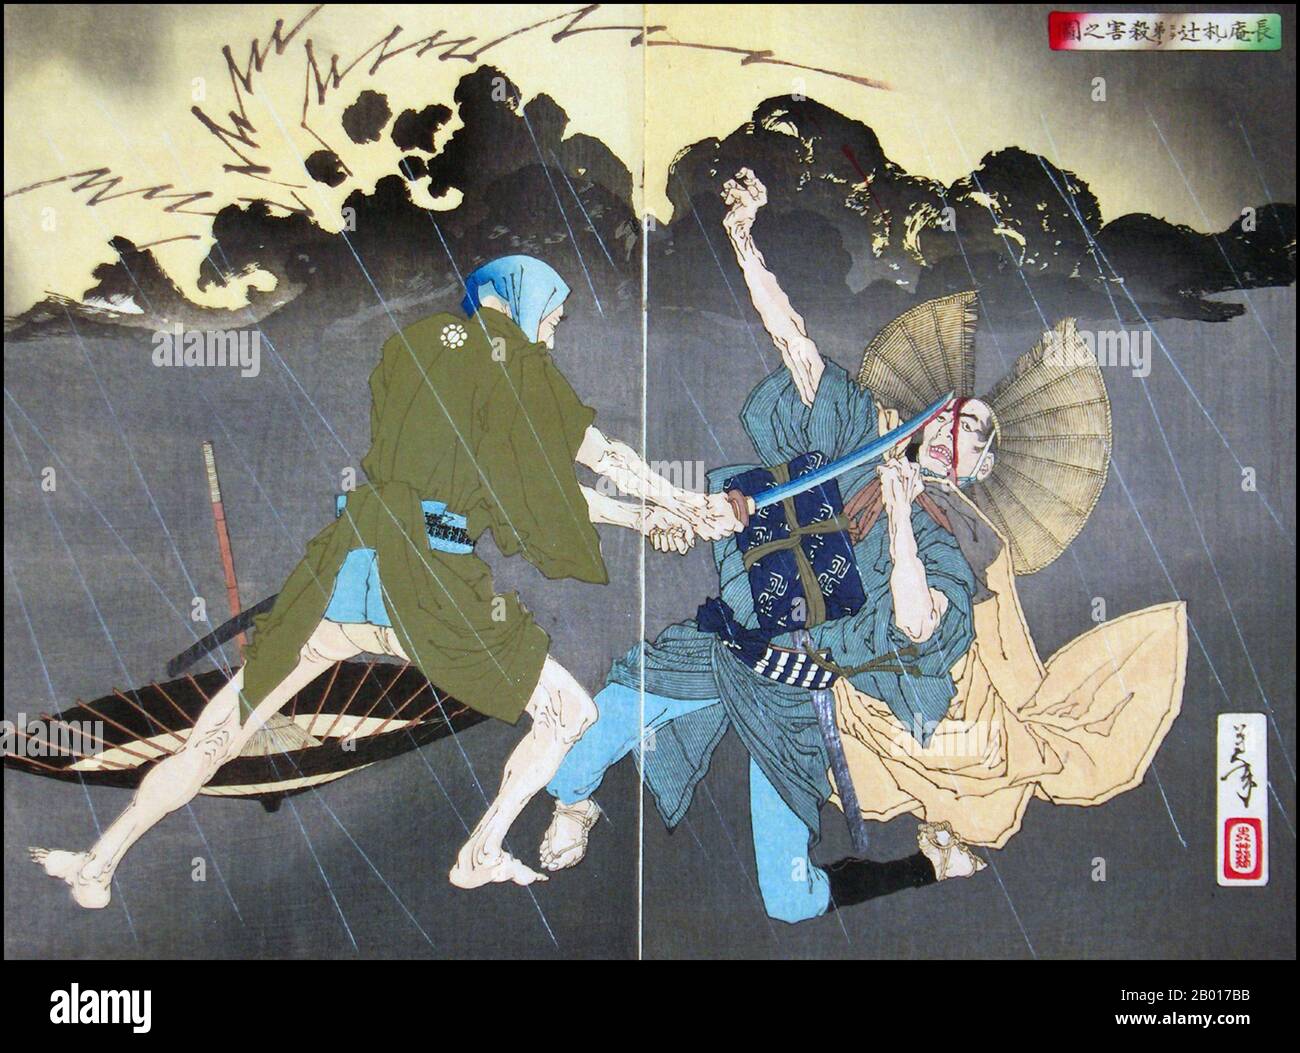 Japon: 'Murai Choan tuant son frère cadet au carrefour de Fudanotsuji'.Ukiyo-e Woodblock diptych par Tsukioka Yoshitoshi (30 avril 1839 - 9 juin 1892), 1886.Tsukioka Yoshitoshi, également appelé Tiso Yoshitoshi, était un artiste japonais.Il est largement reconnu comme le dernier grand maître d'Ukiyo-e, un type d'impression de blocs de bois japonais.Il est également considéré comme l'un des plus grands innovateurs de la forme.Sa carrière s'est étendue à deux époques : les dernières années du Japon féodal et les premières années du Japon moderne après la restauration de Meiji. Banque D'Images